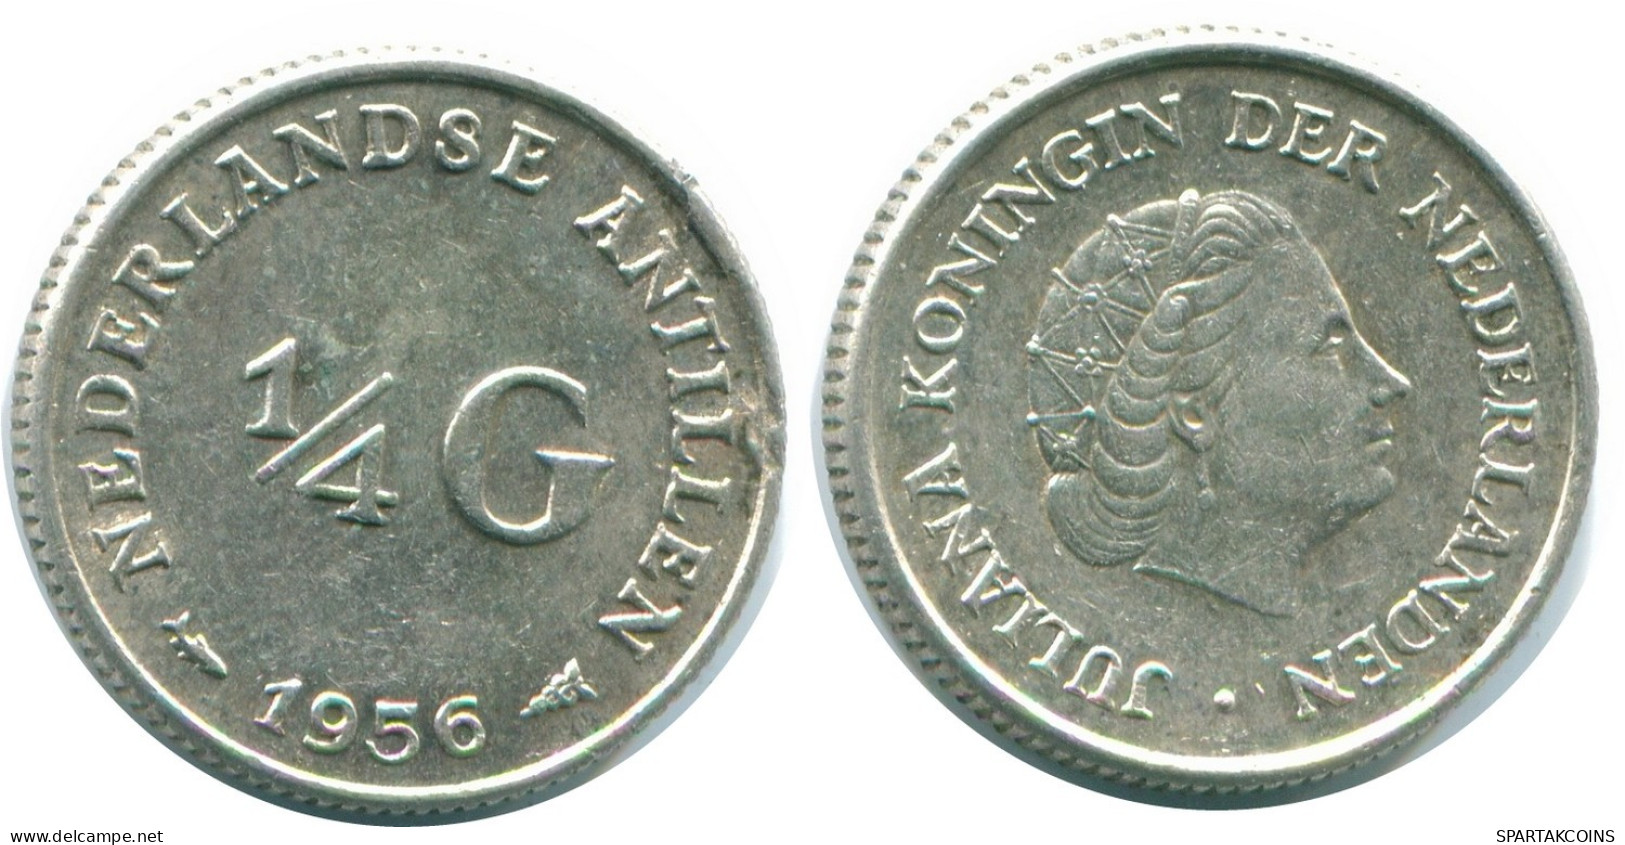 1/4 GULDEN 1956 NIEDERLÄNDISCHE ANTILLEN SILBER Koloniale Münze #NL10910.4.D.A - Antilles Néerlandaises